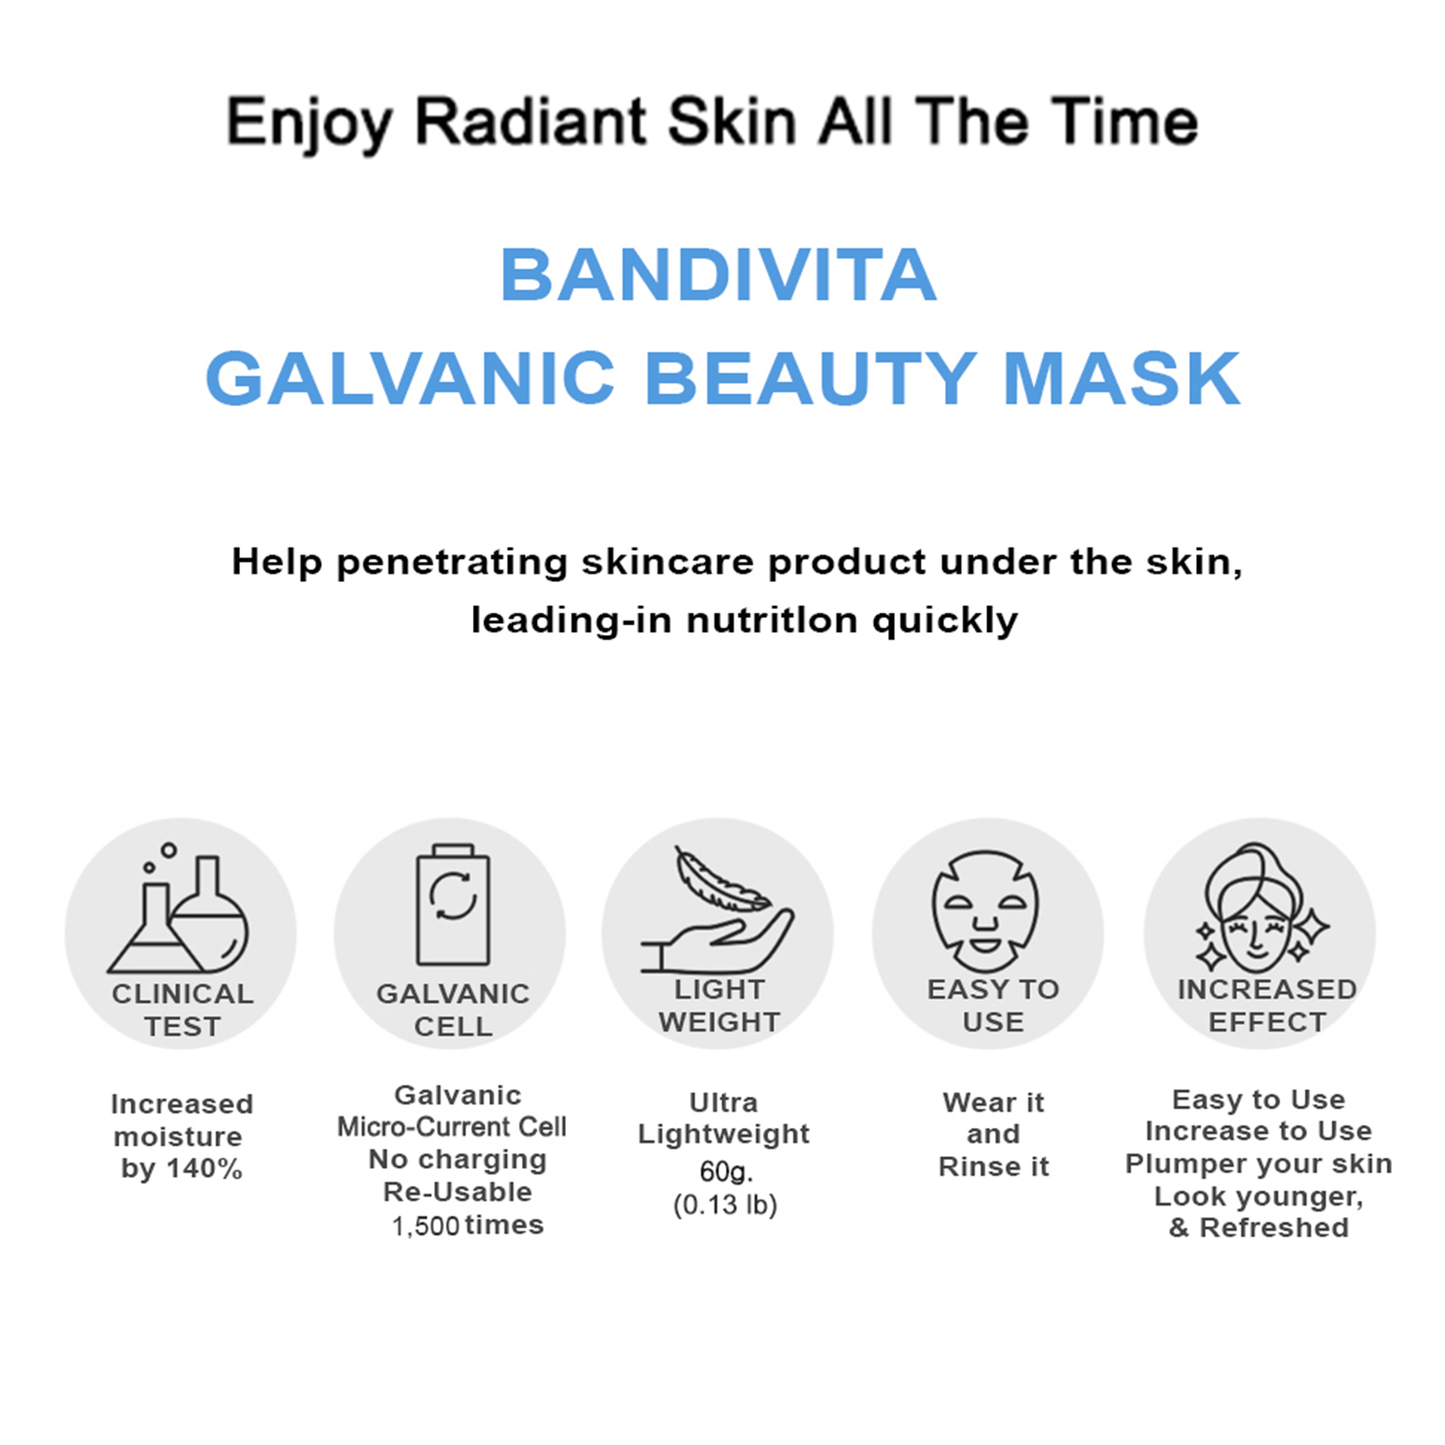 Galvanic Beauty Mask